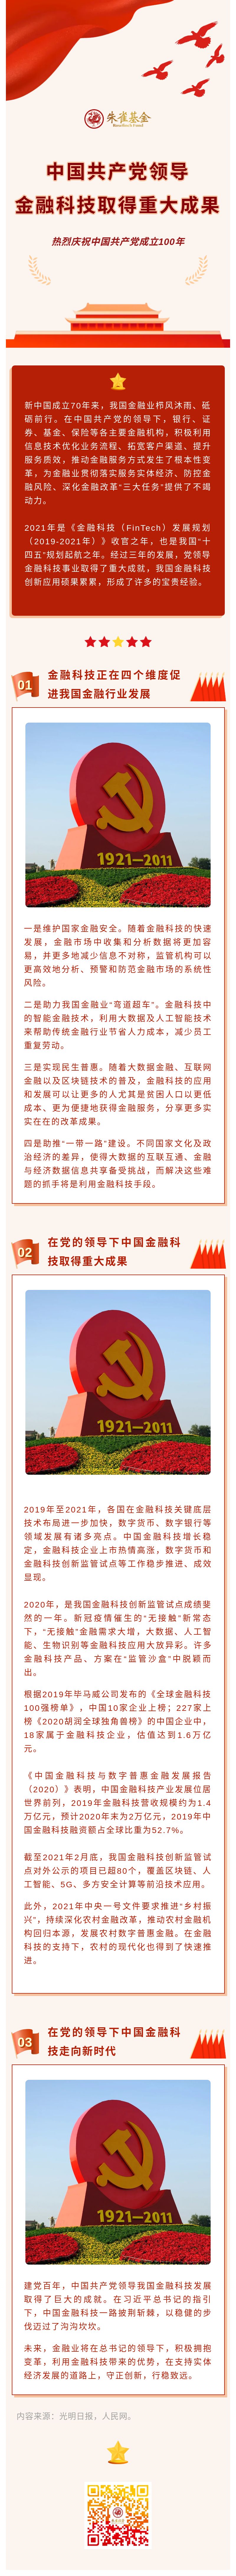 5-中国共产党领导金融科技取得重大成果.jpg